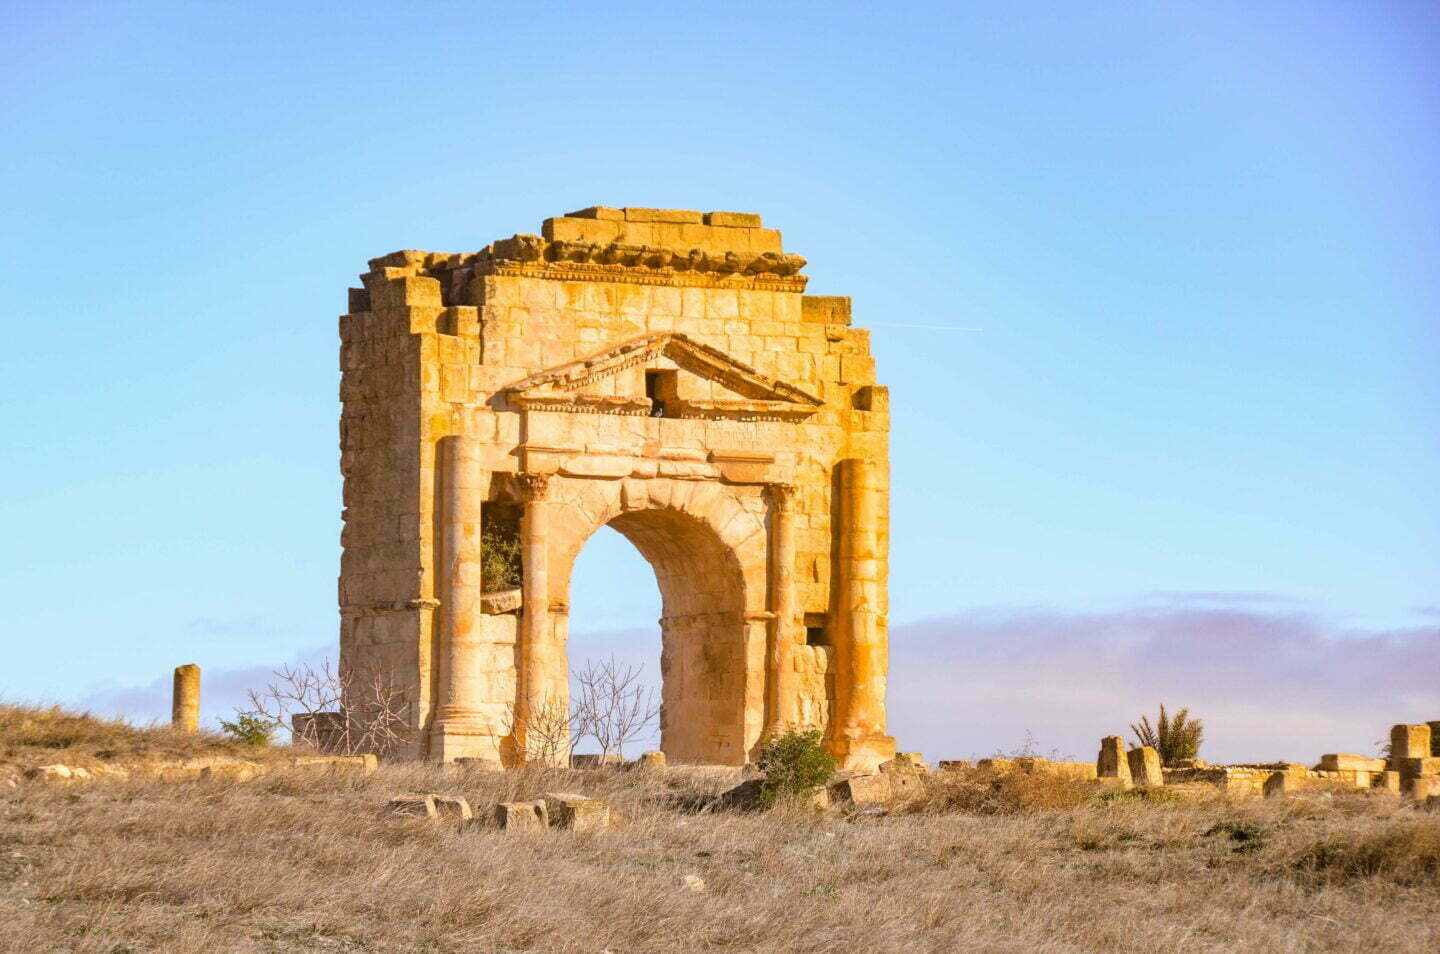 Tunisie - Makthar, une nuit agitée et une ville numide pleine de vestiges romains